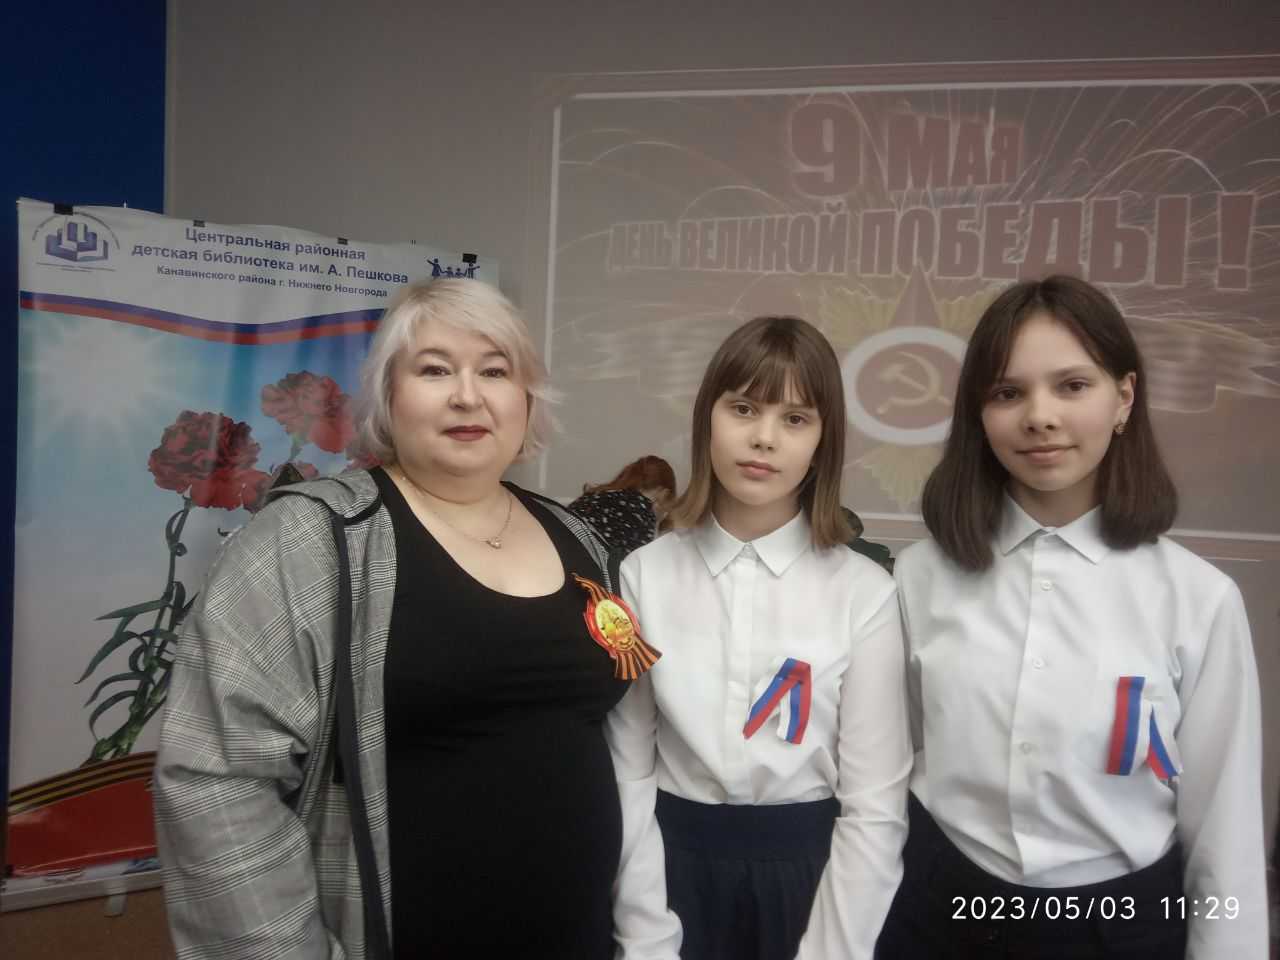 3 мая в Центральной районной детской библиотеке им. А. Пешкова прошел праздничный концерт, посвященный Дню Победы!